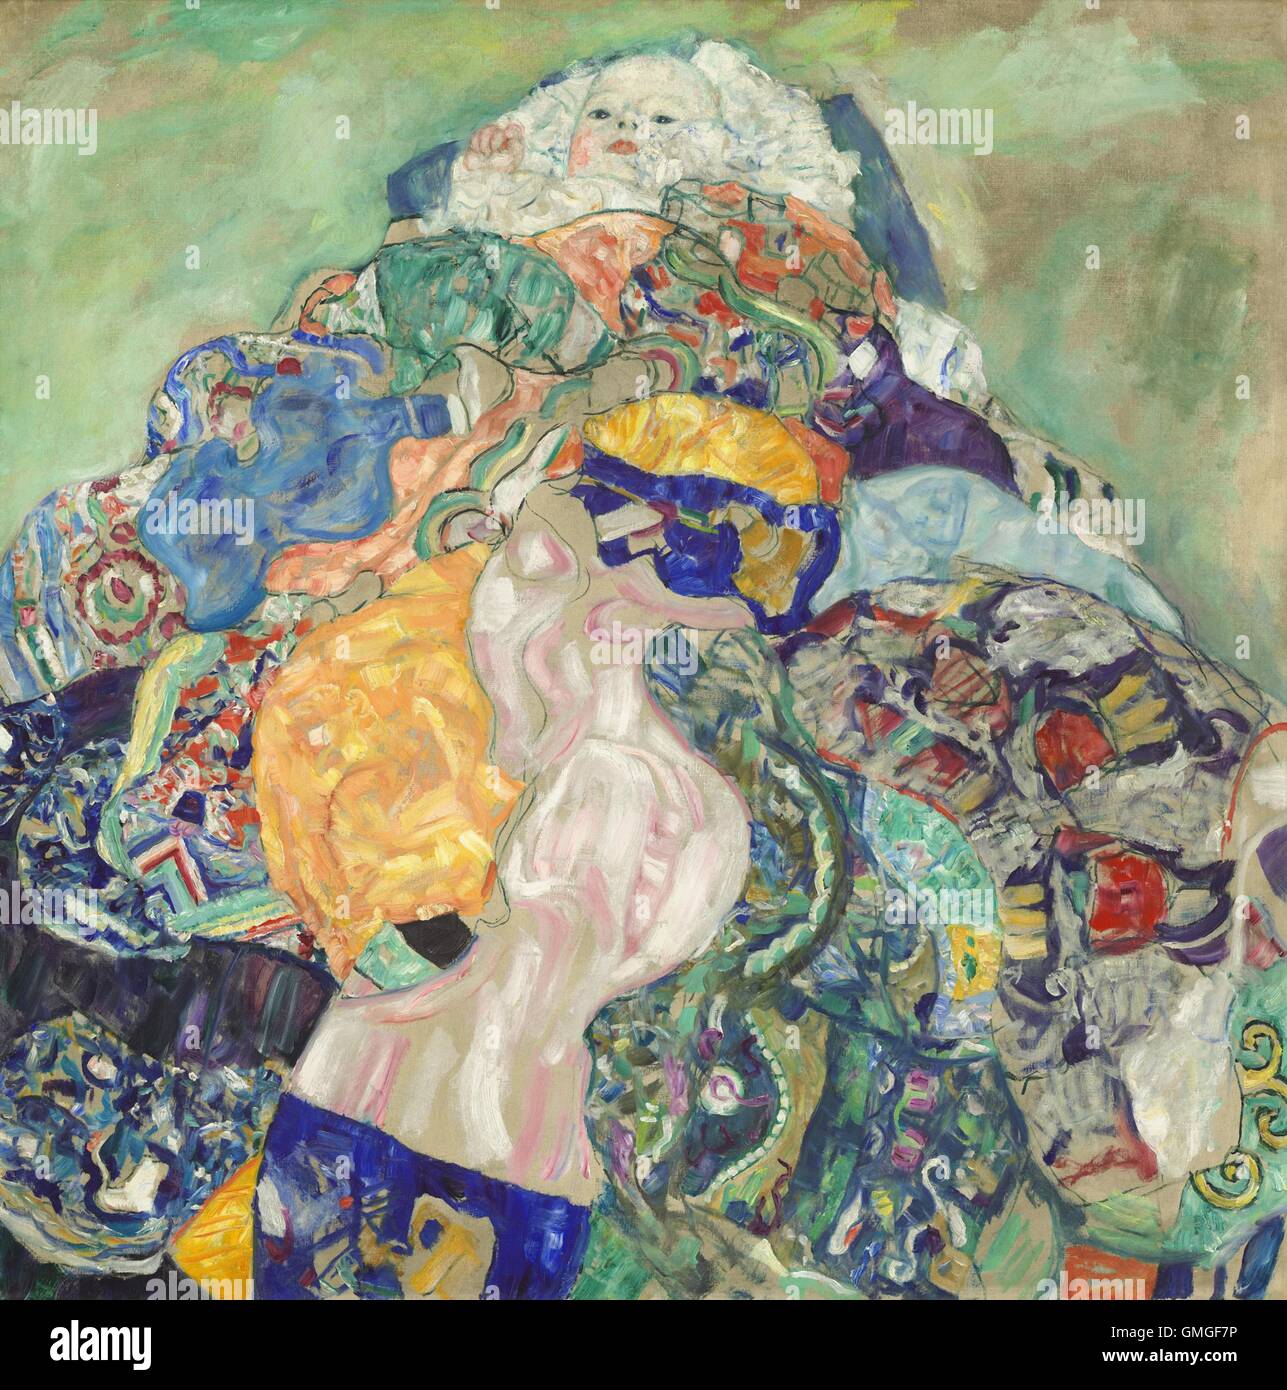 Gustav Klimt, da bambino (base), 1917-18, pittura austriaca, olio su tela. Klimt era un austriaco pittore simbolista e uno dei più eminenti membri del movimento della Secessione Viennese prima della prima guerra mondiale I. Questo fine lavoro, ha ridiscusso temi da opere compl (BSLOC 2016 6 95) Foto Stock